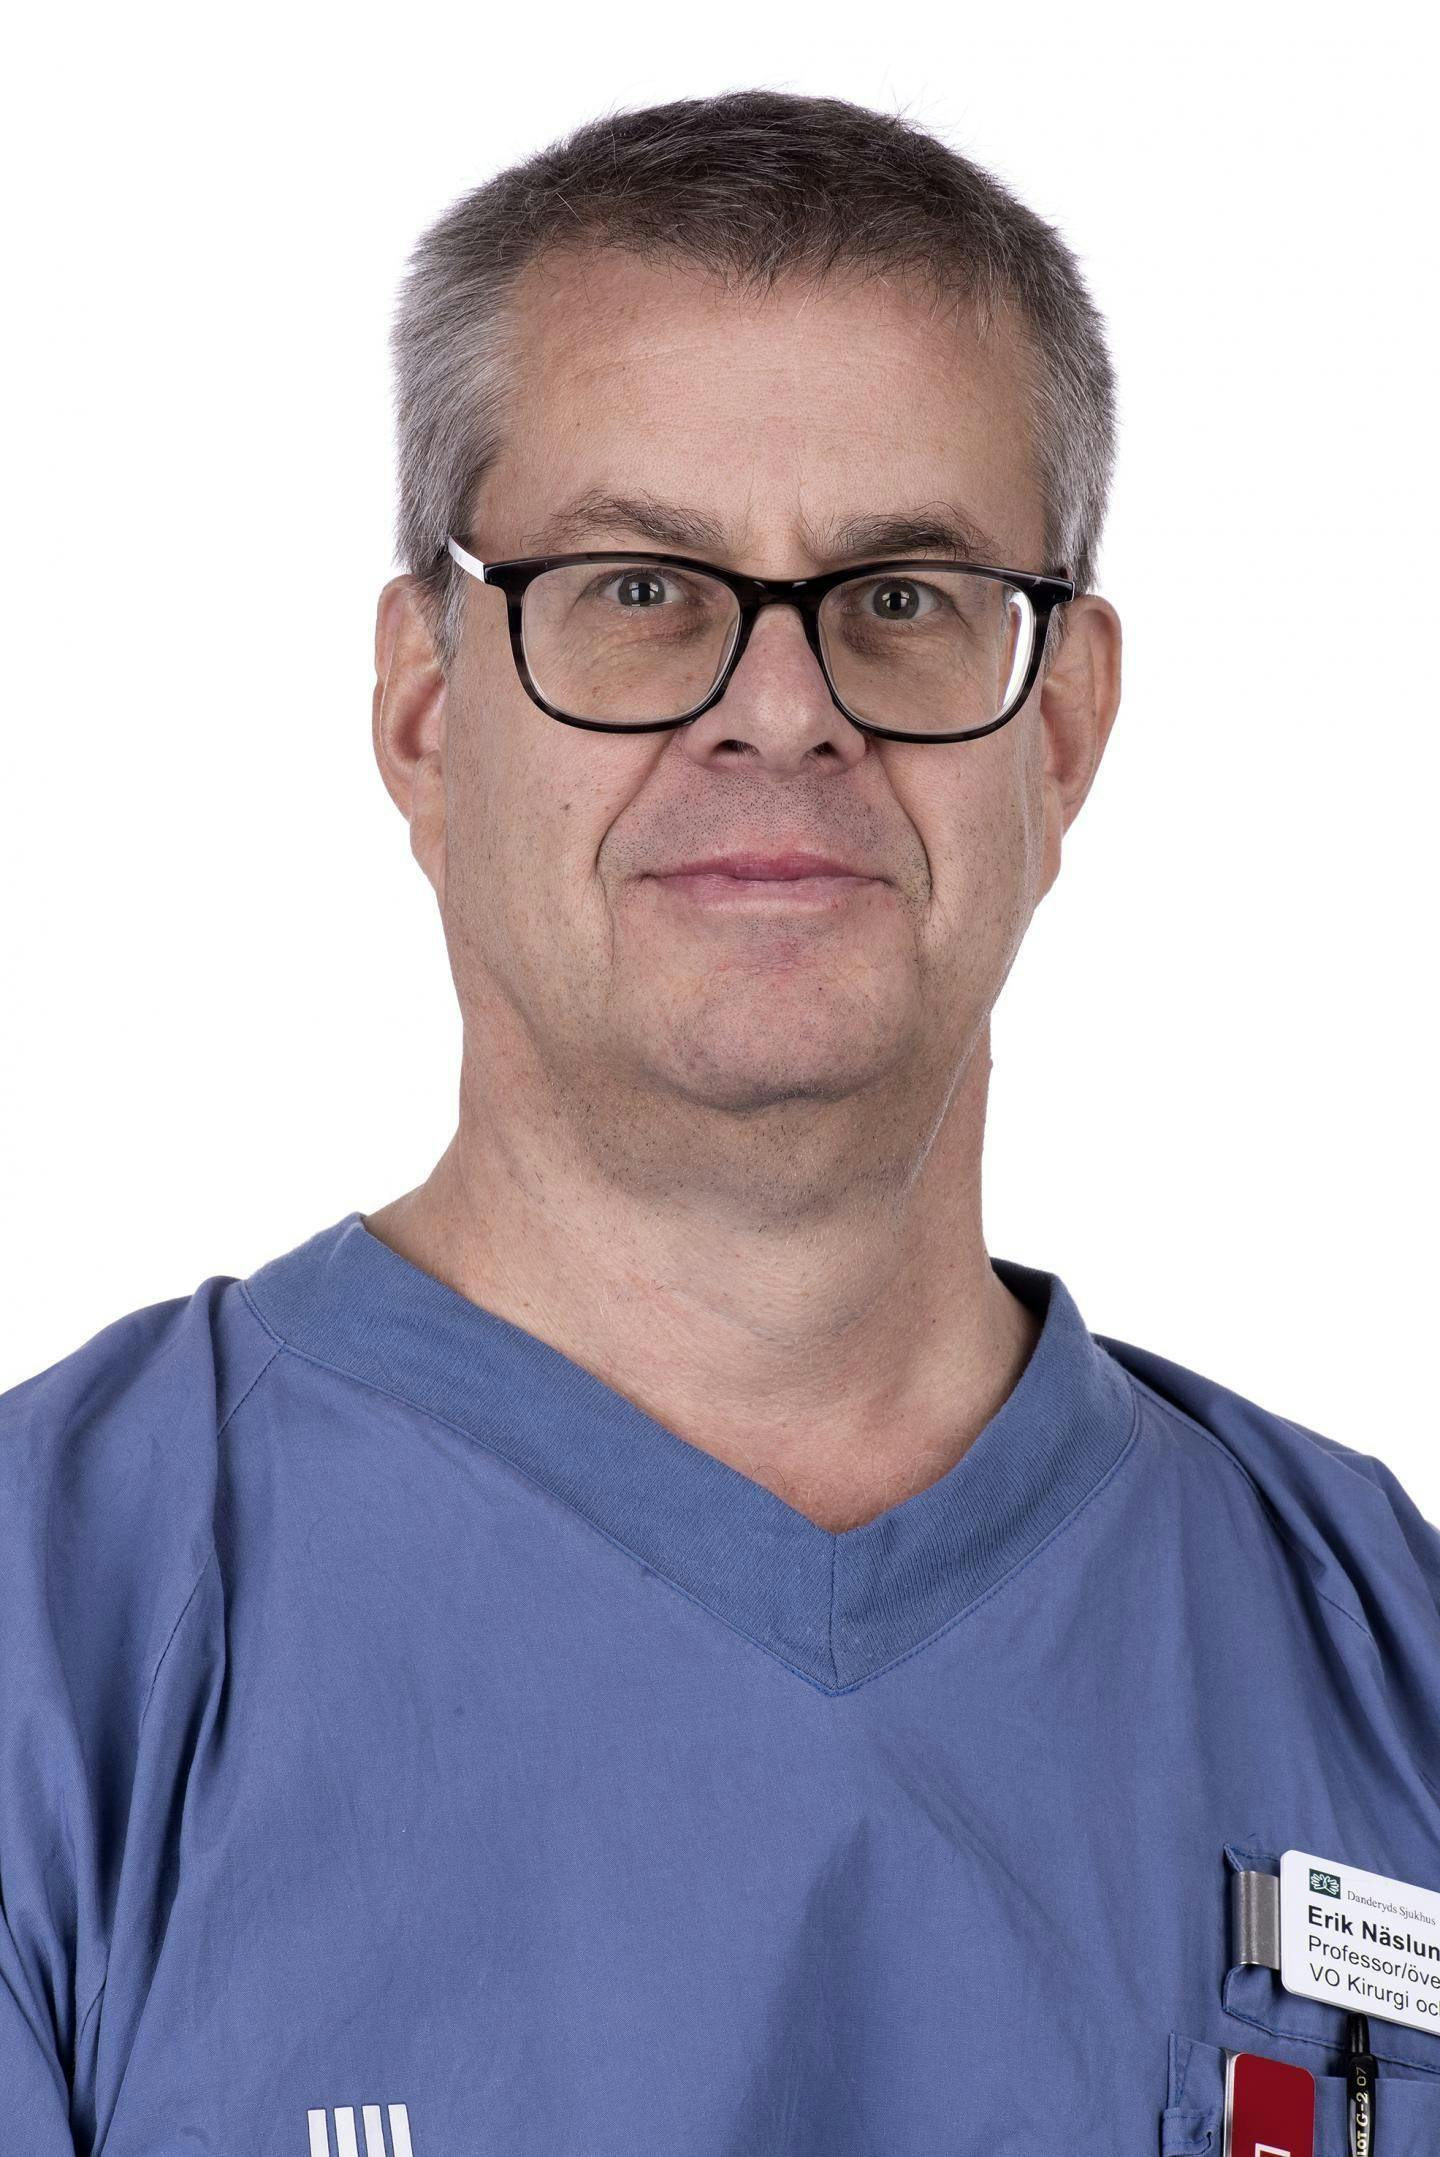 Erik Naslund, MD, PhD